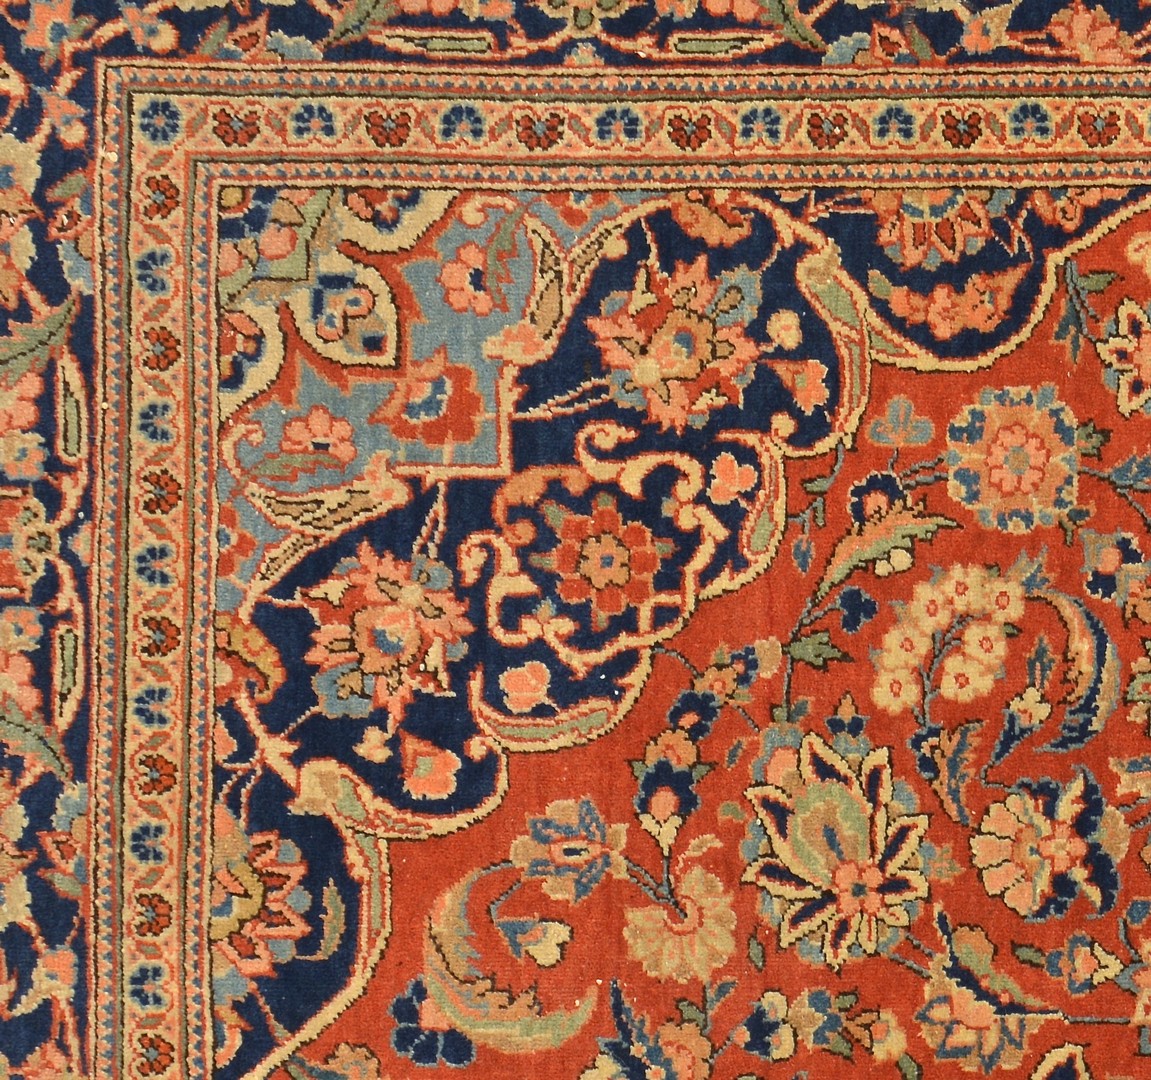 Lot 248: Persian Kashan area rug, c. 1920-30